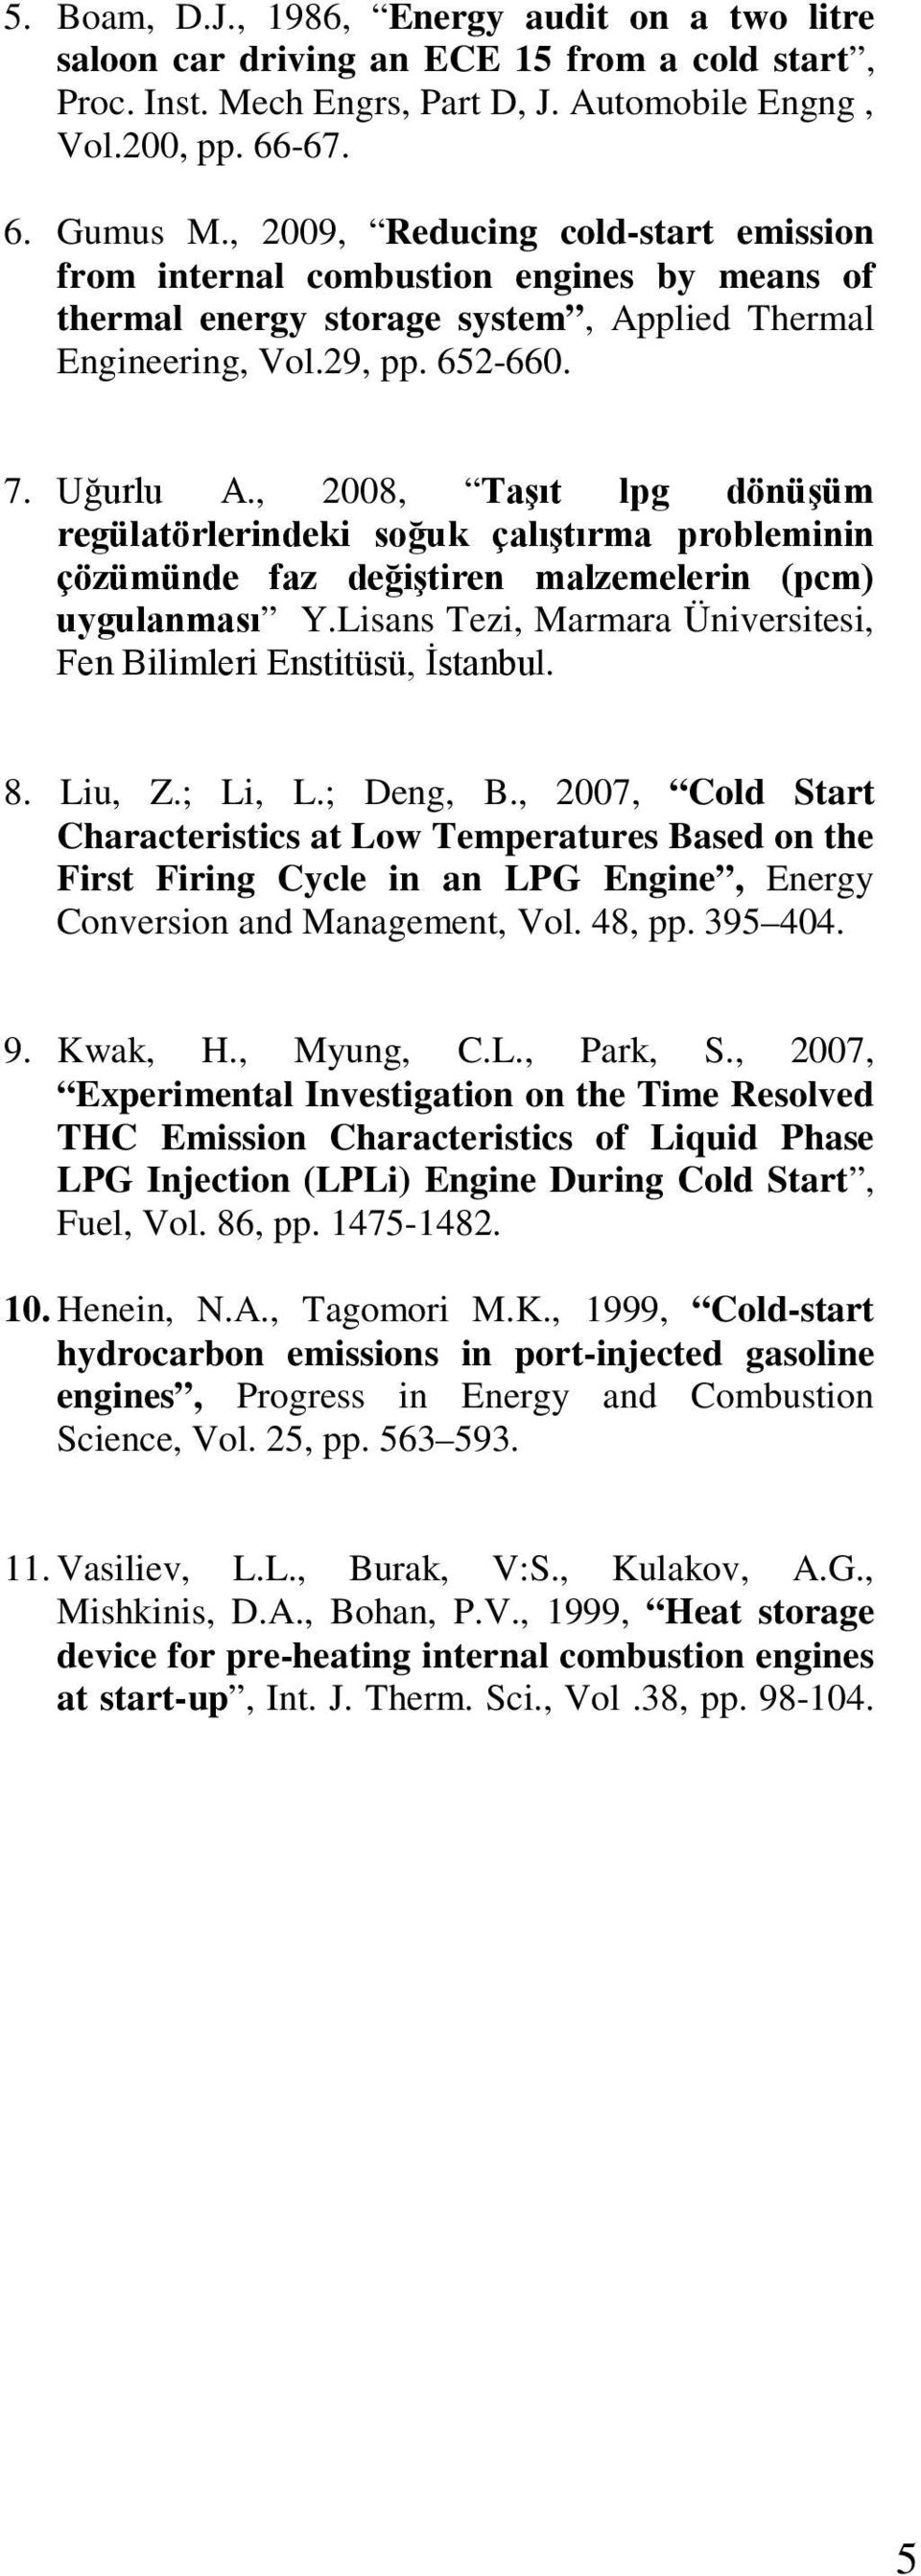 , 2008, Taşıt lpg dönüşüm regülatörlerindeki soğuk çalıştırma probleminin çözümünde faz değiştiren malzemelerin (pcm) uygulanması Y.